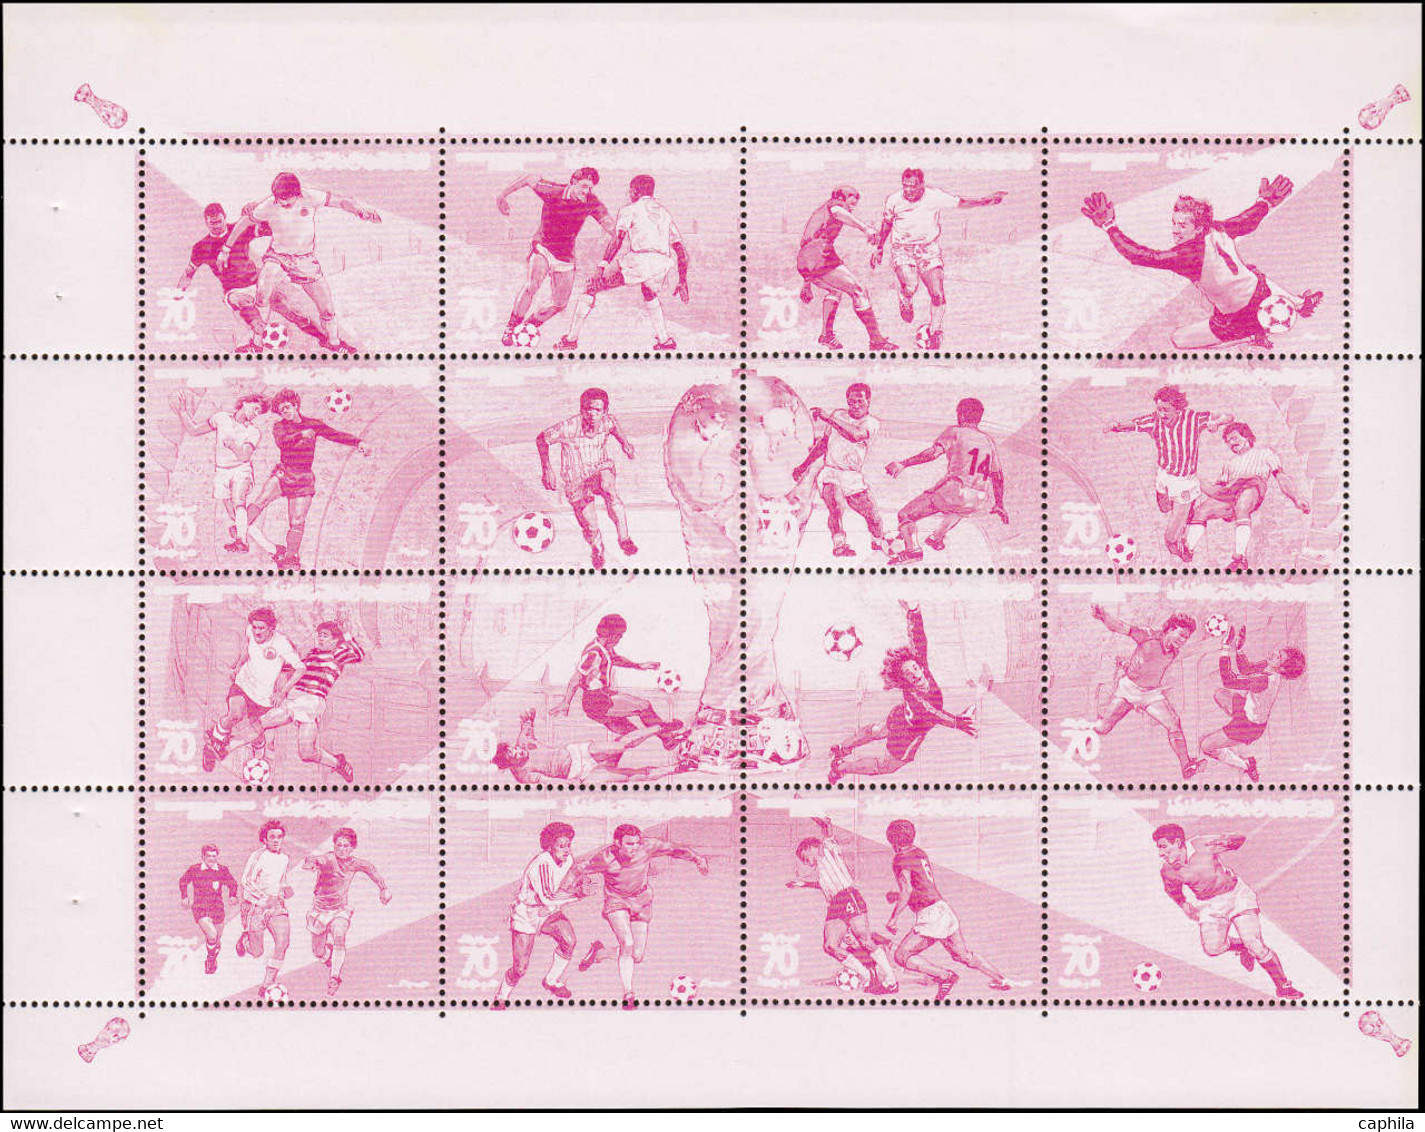 ESS LIBYE - Poste - 1379/94, série de 12 blocs d'essais de couleurs différents, dentelés: Football 1984 (+200 essais)